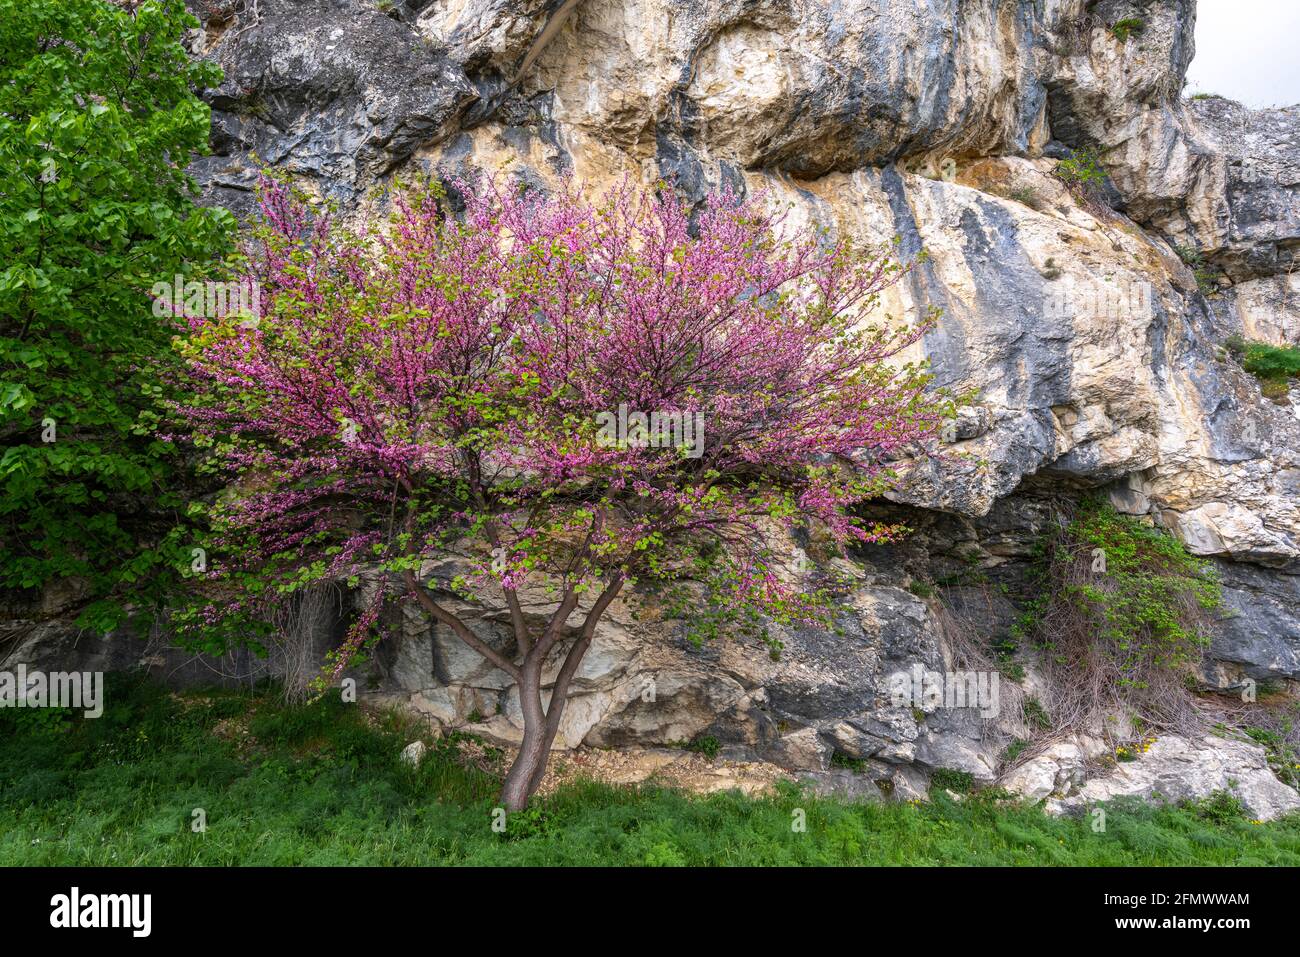 Un arbre de Judas, Cerdis siliquastrum, s'épanouit au pied d'un mur de roche. Abruzzes, Italie, europe Banque D'Images